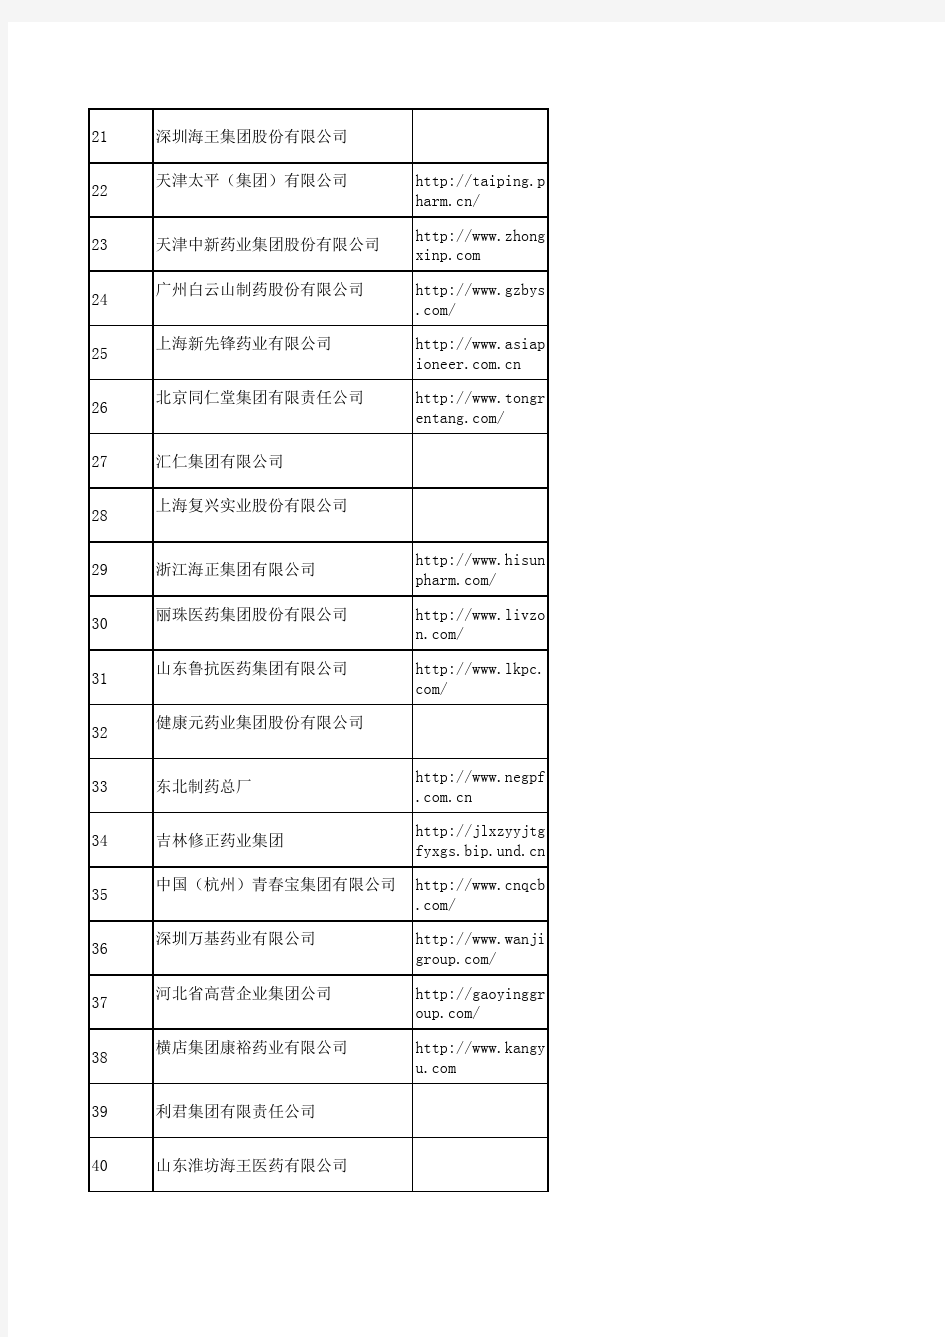 2010中国100强医药公司排名包括国企